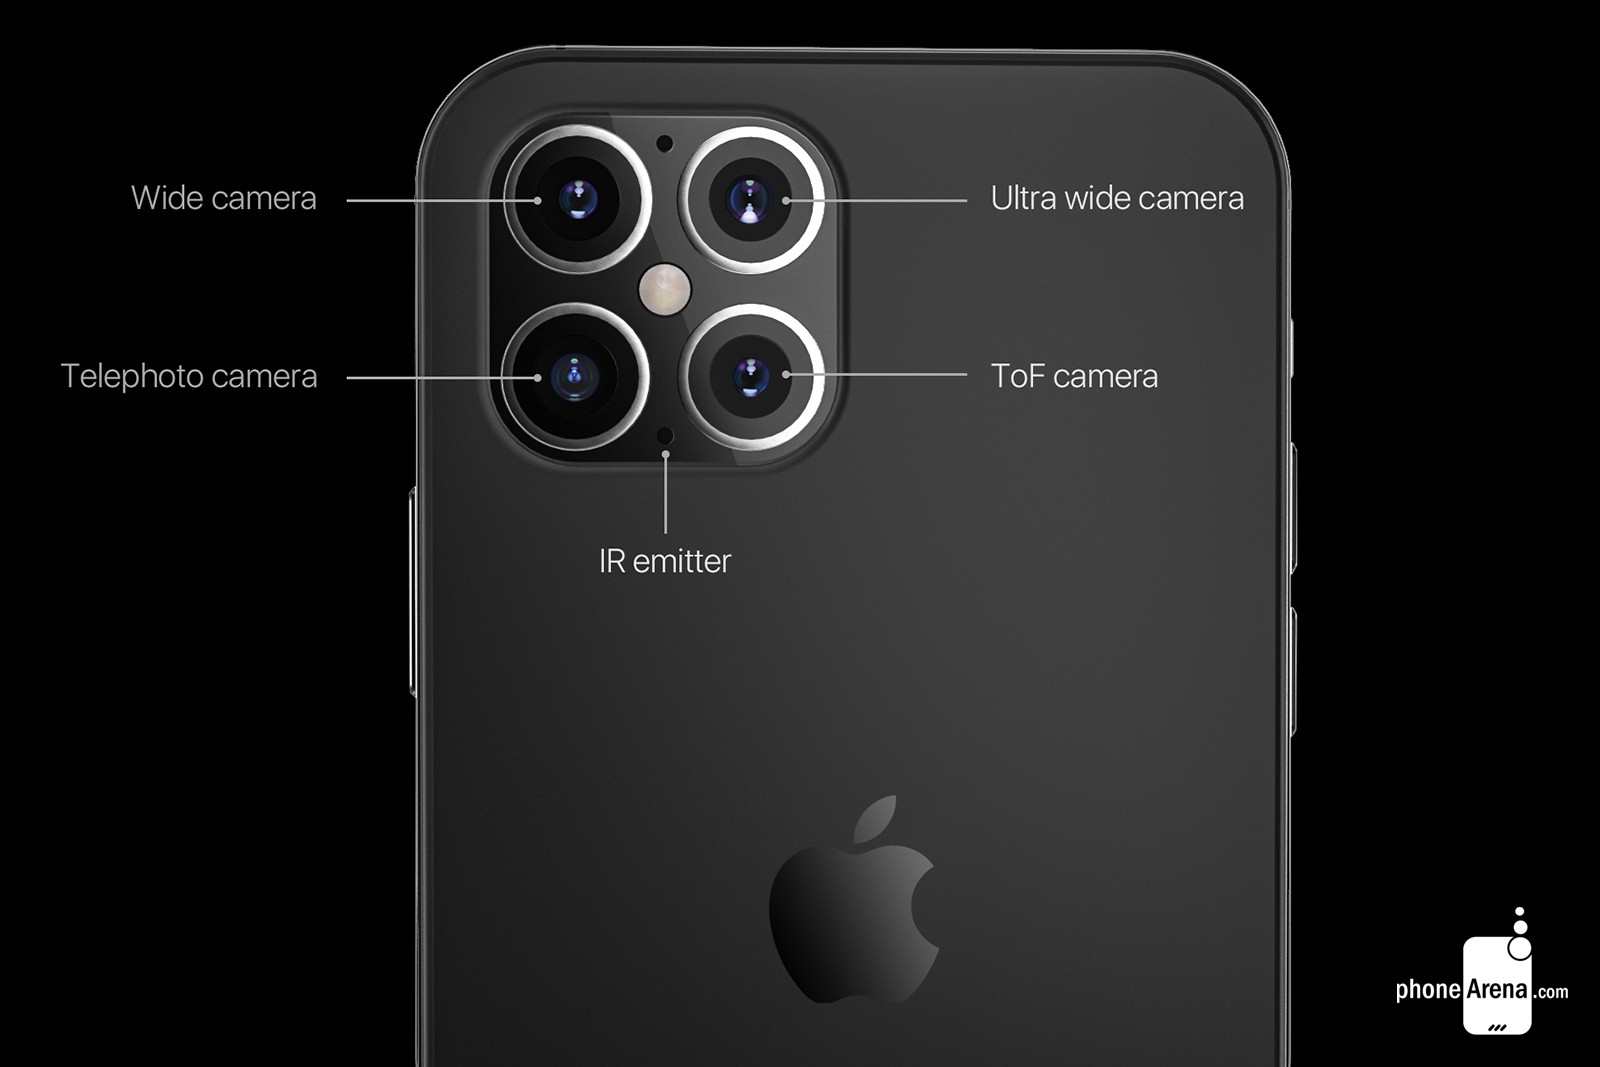 Cùng ngắm concept
iPhone 12 với thiết kế giống iPhone 4, 'tai thỏ'
nhỏ gọn hơn cùng 4 camera ở mặt lưng trông ra sao?